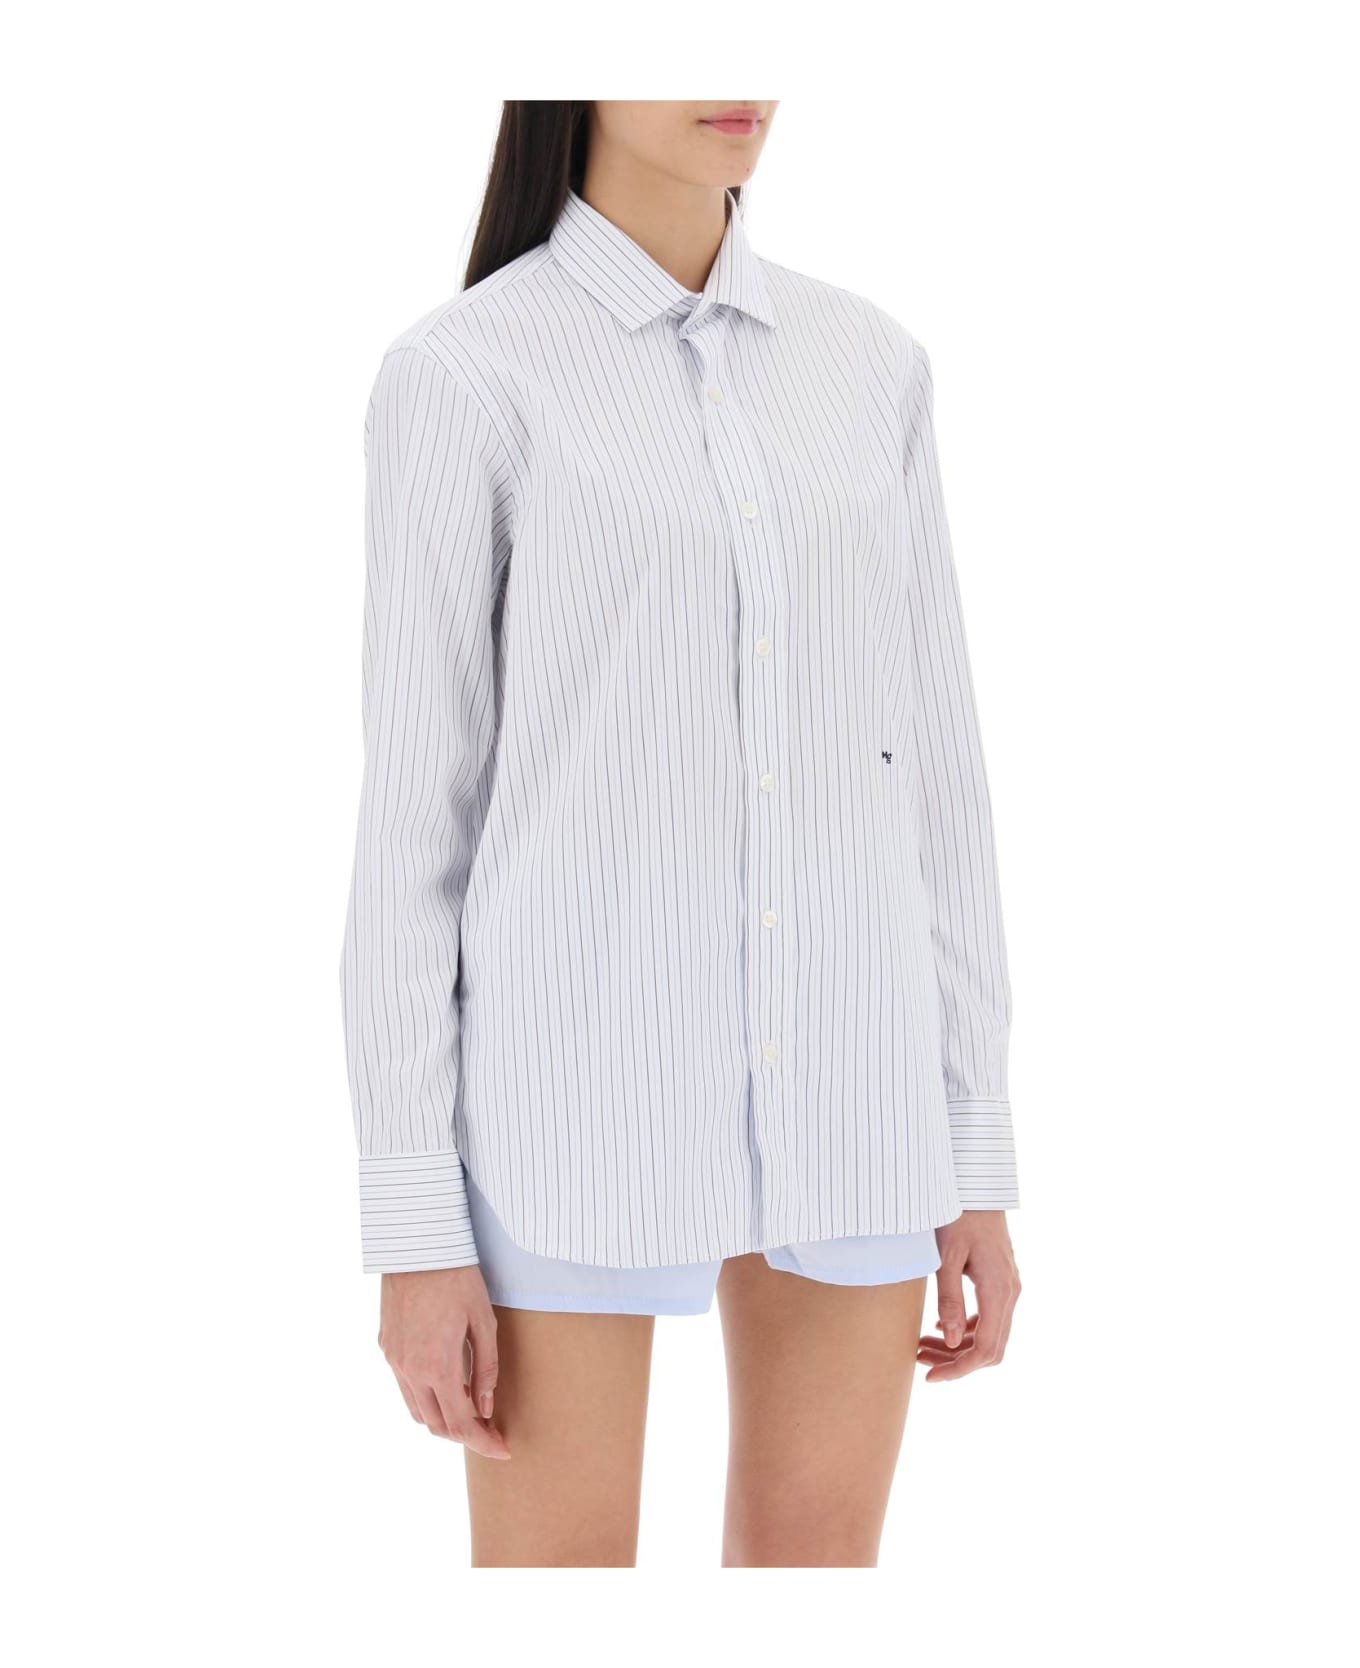 HommeGirls Striped Poplin Shirt - WHITE BLUE (White)